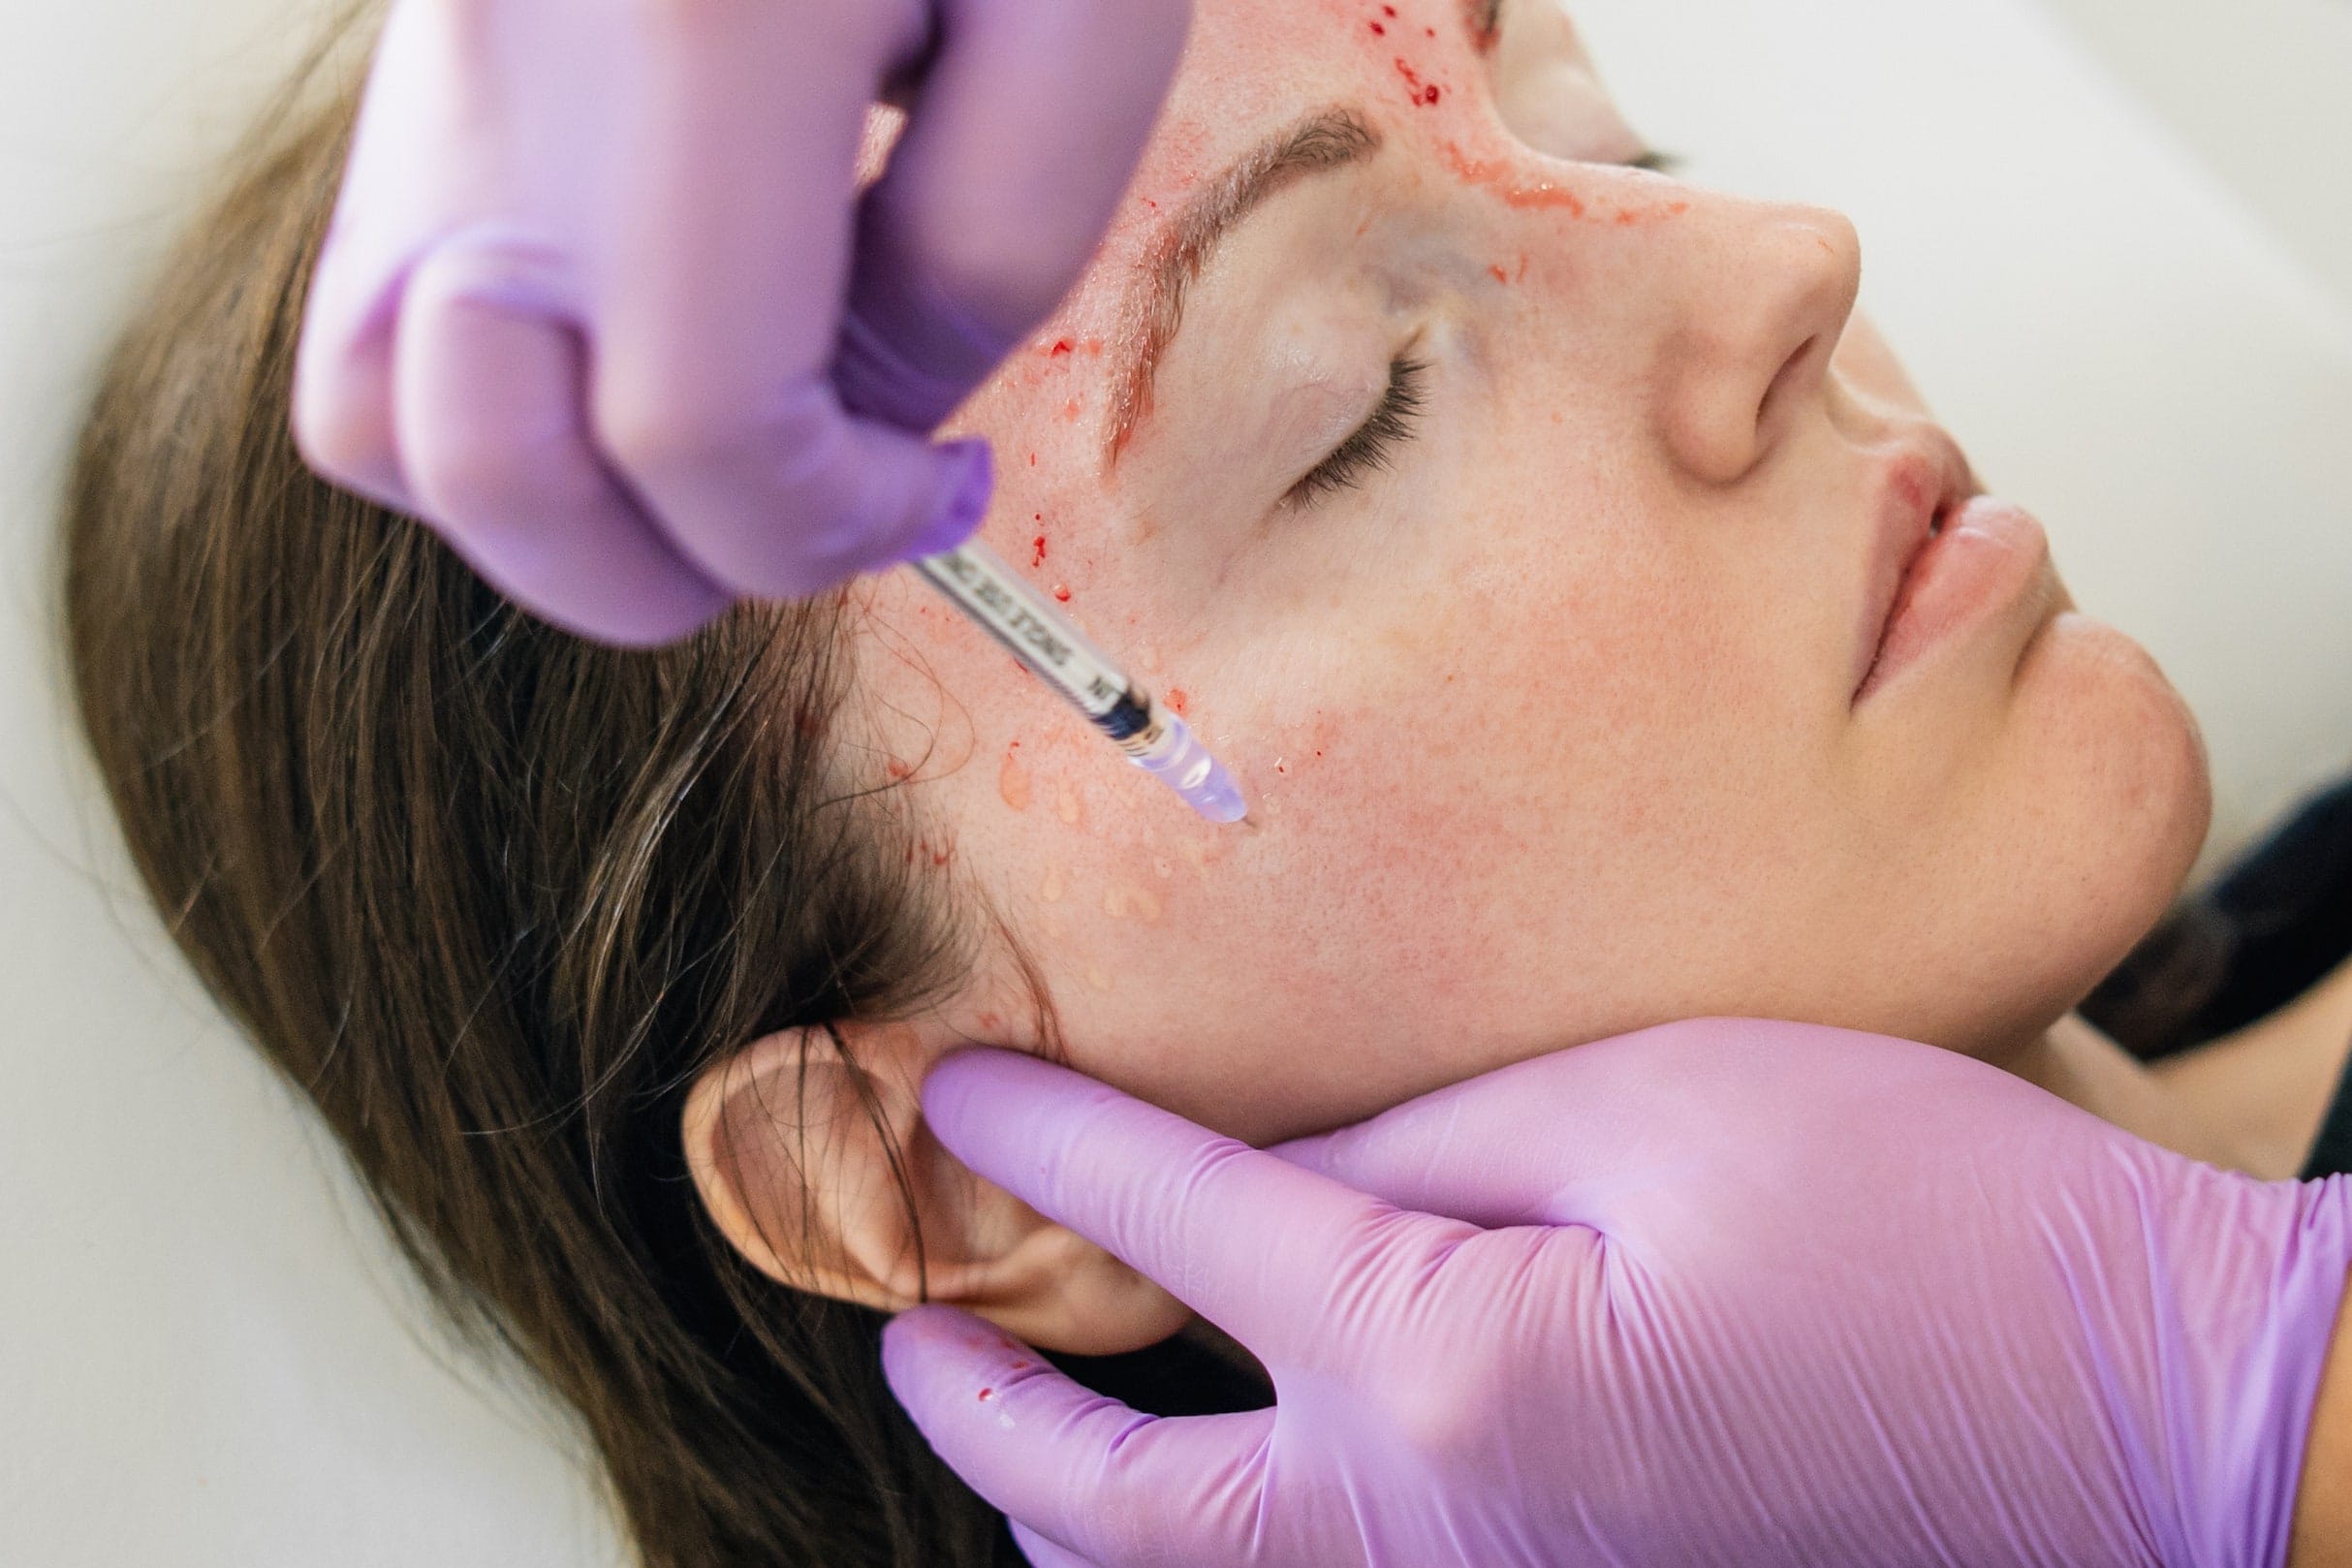 woman getting prp vampire facial done